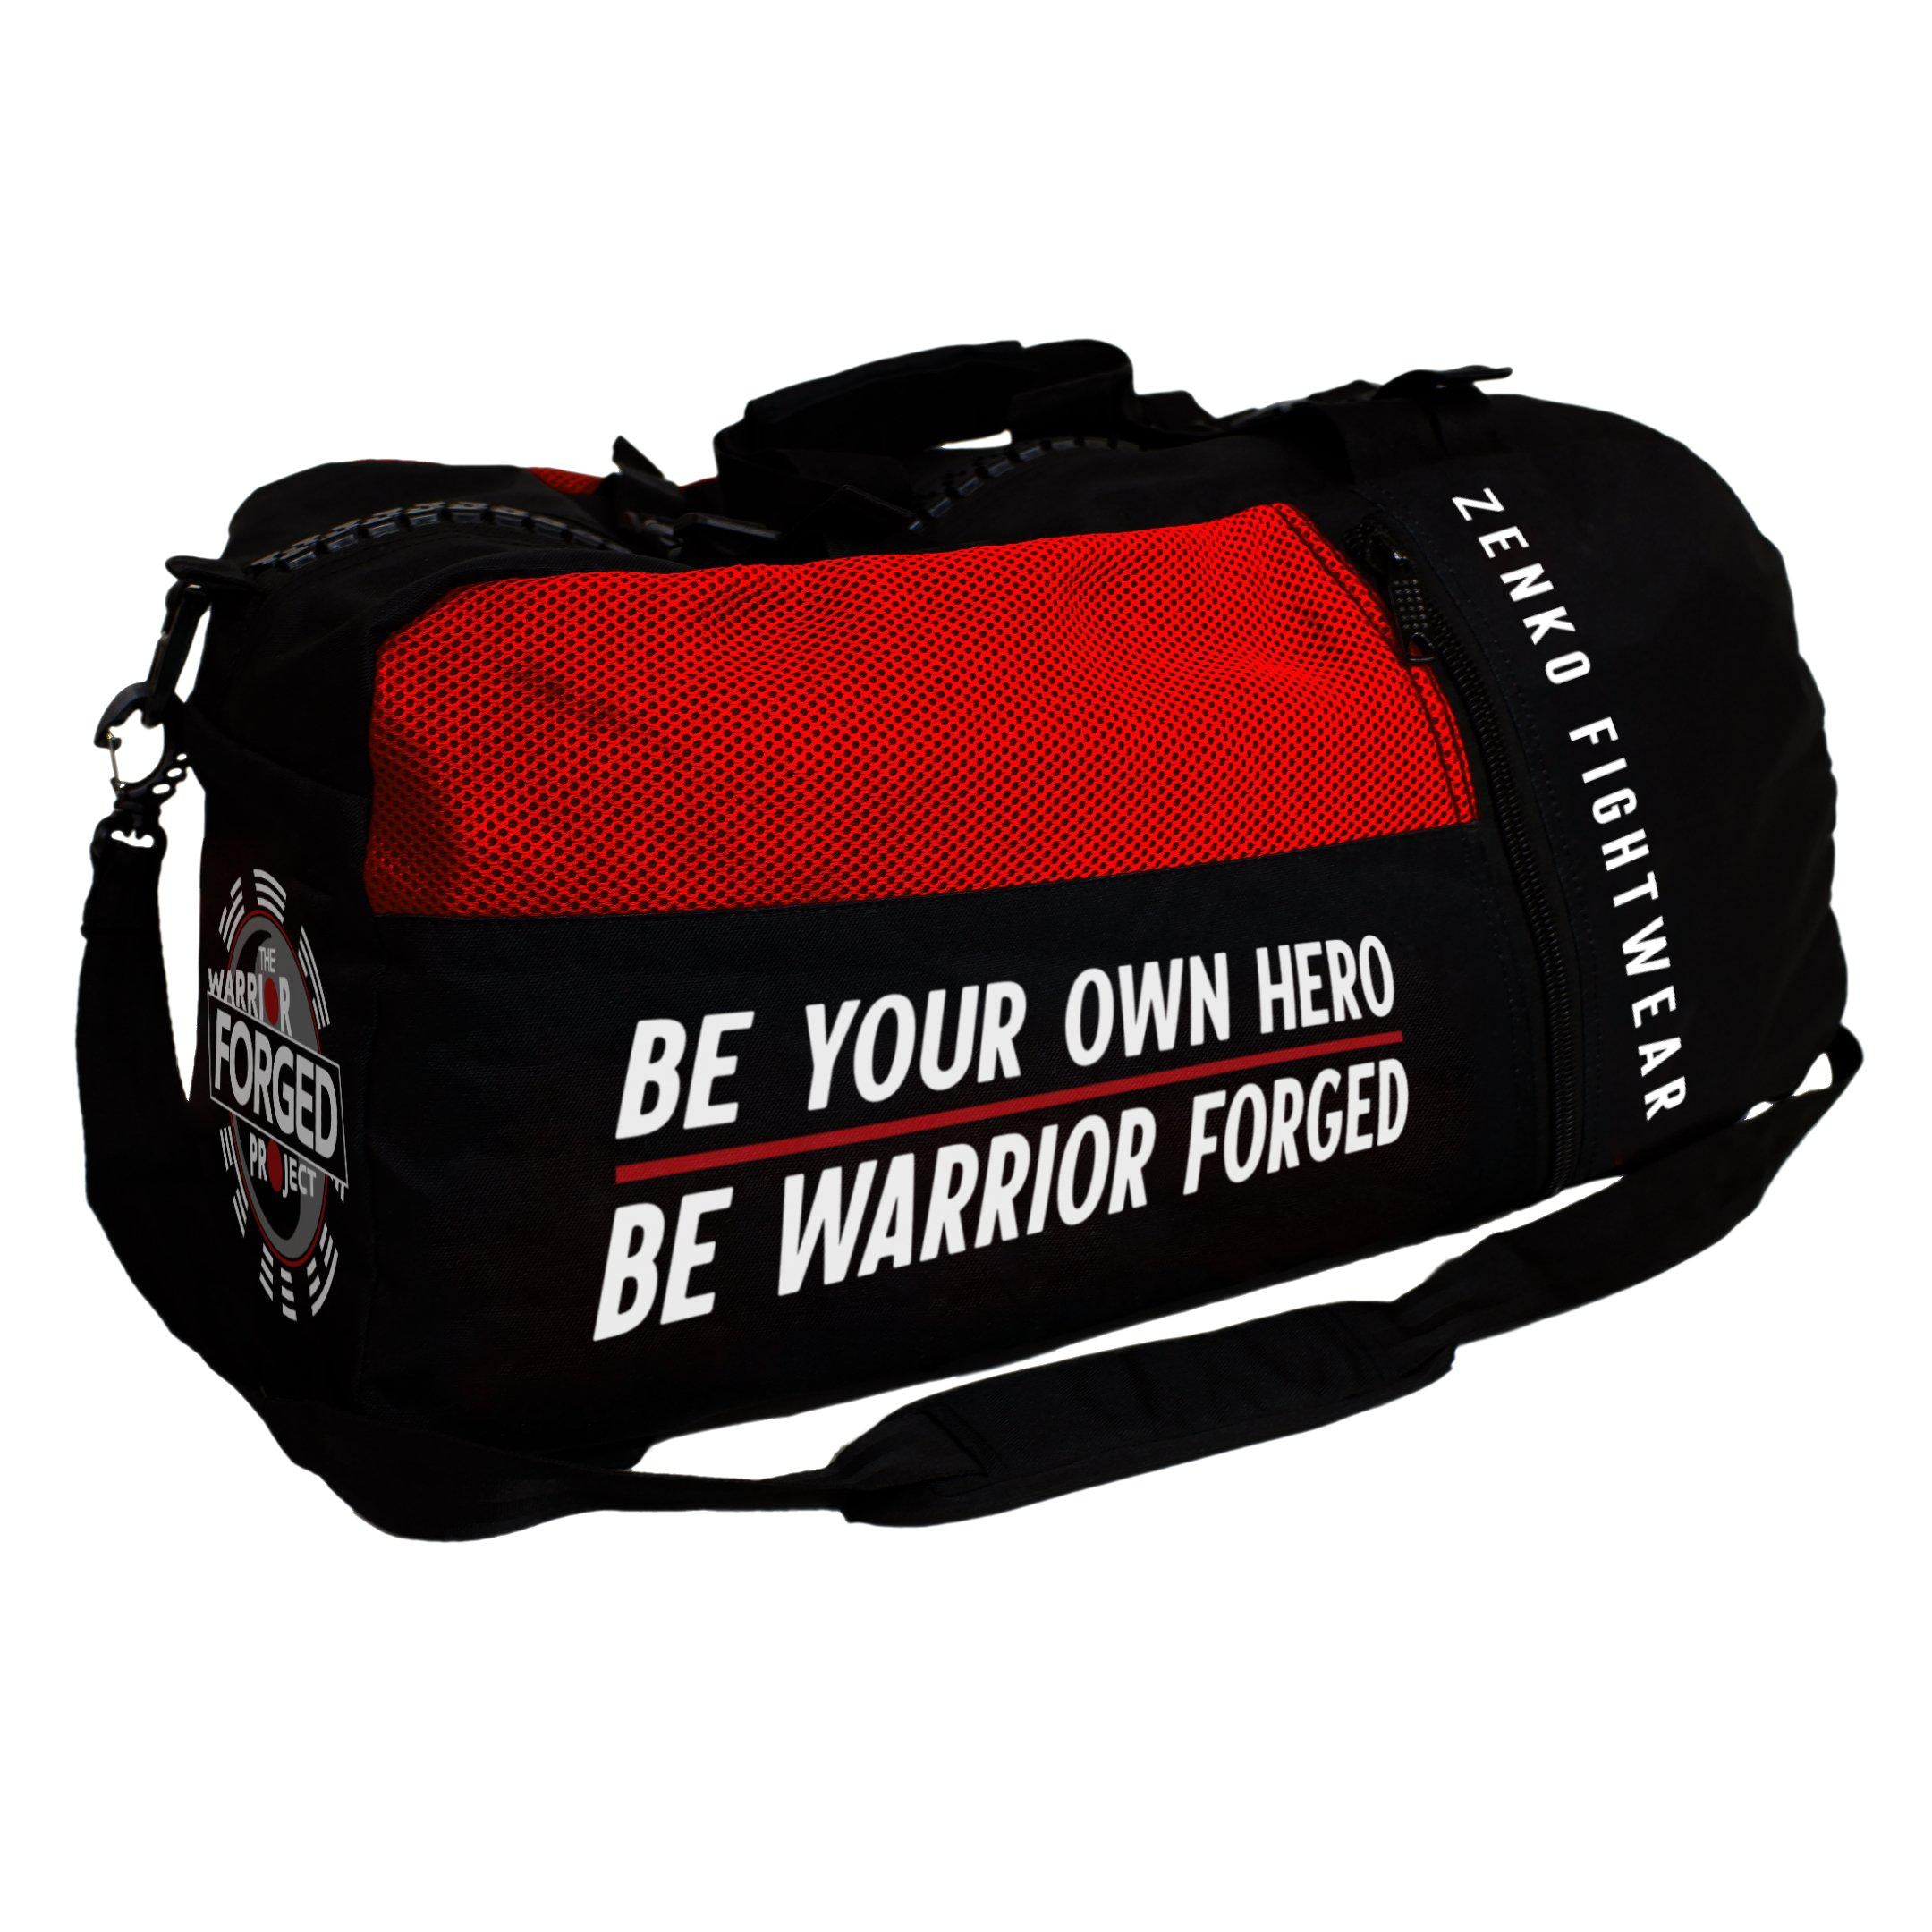 The Warrior Forged Project Gear Bag - Zenko Fightwear